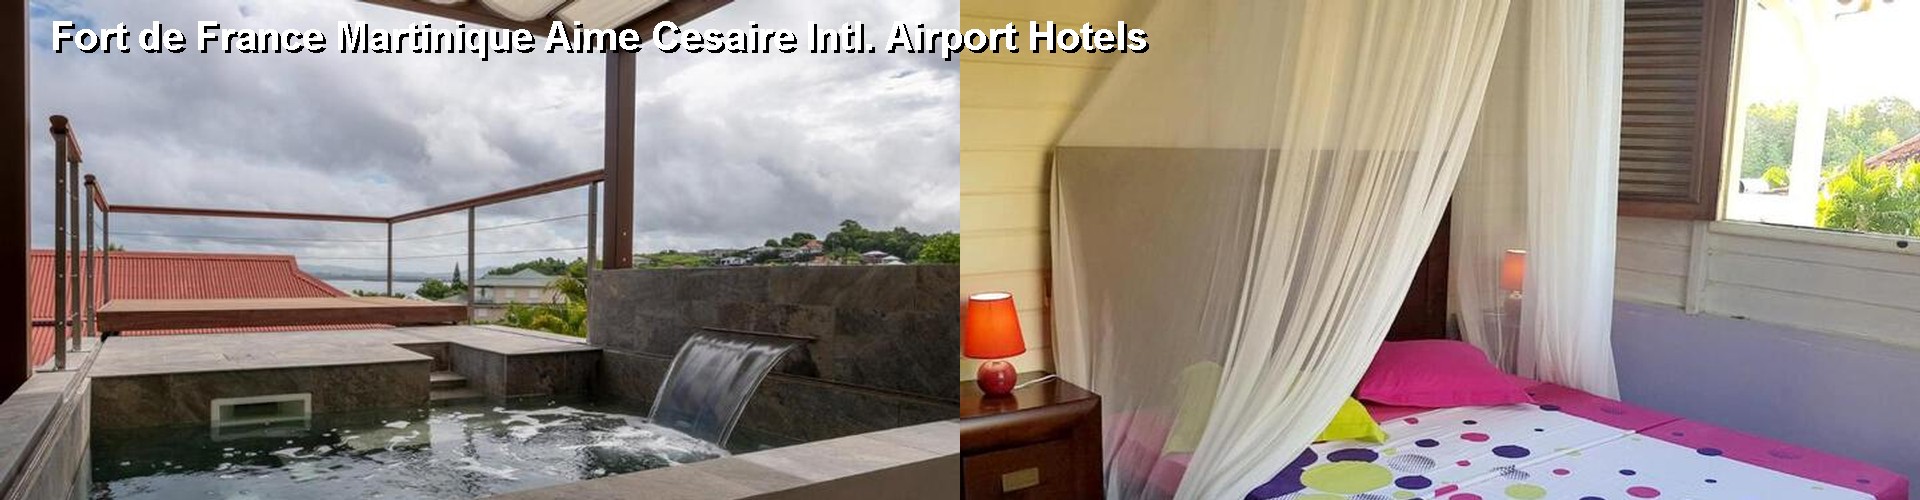 3 Best Hotels near Fort de France Martinique Aime Cesaire Intl. Airport